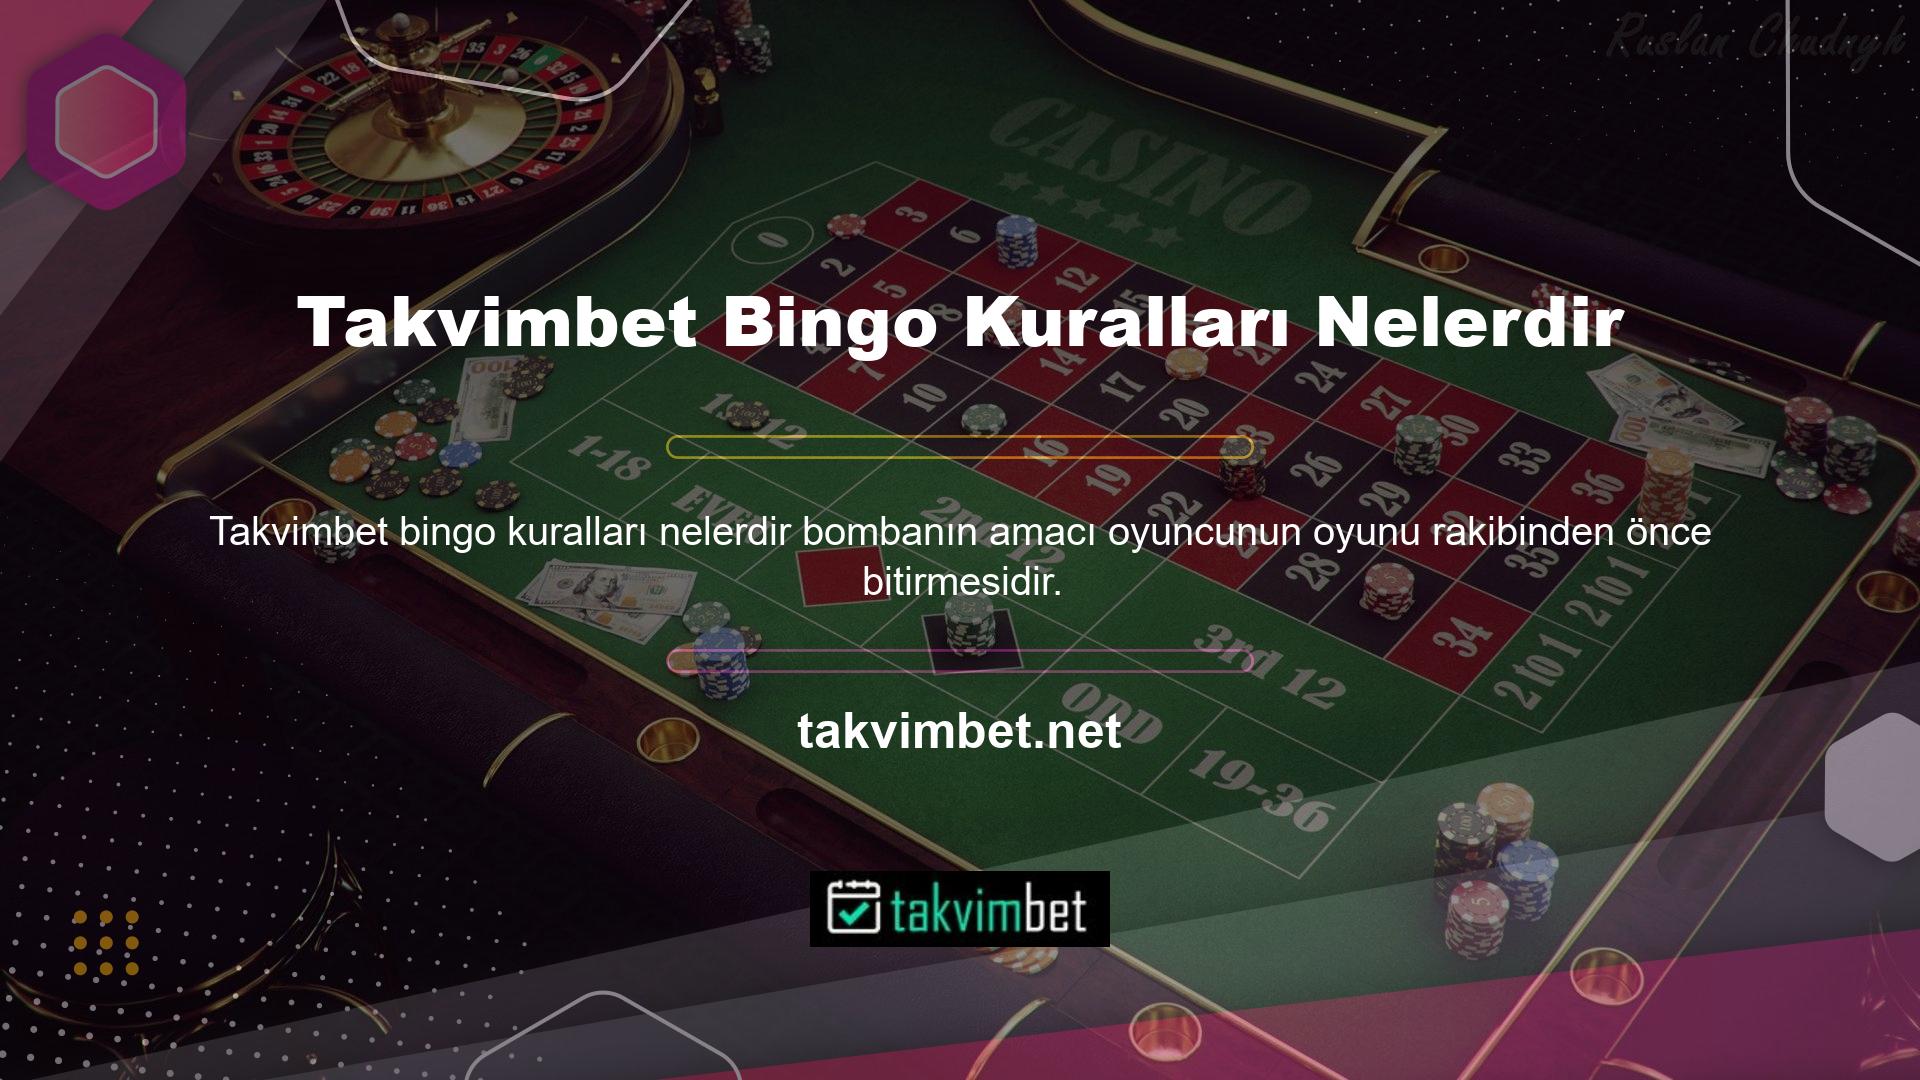 Bingo için belirlenen kurallar genellikle çoğu casino için geçerlidir